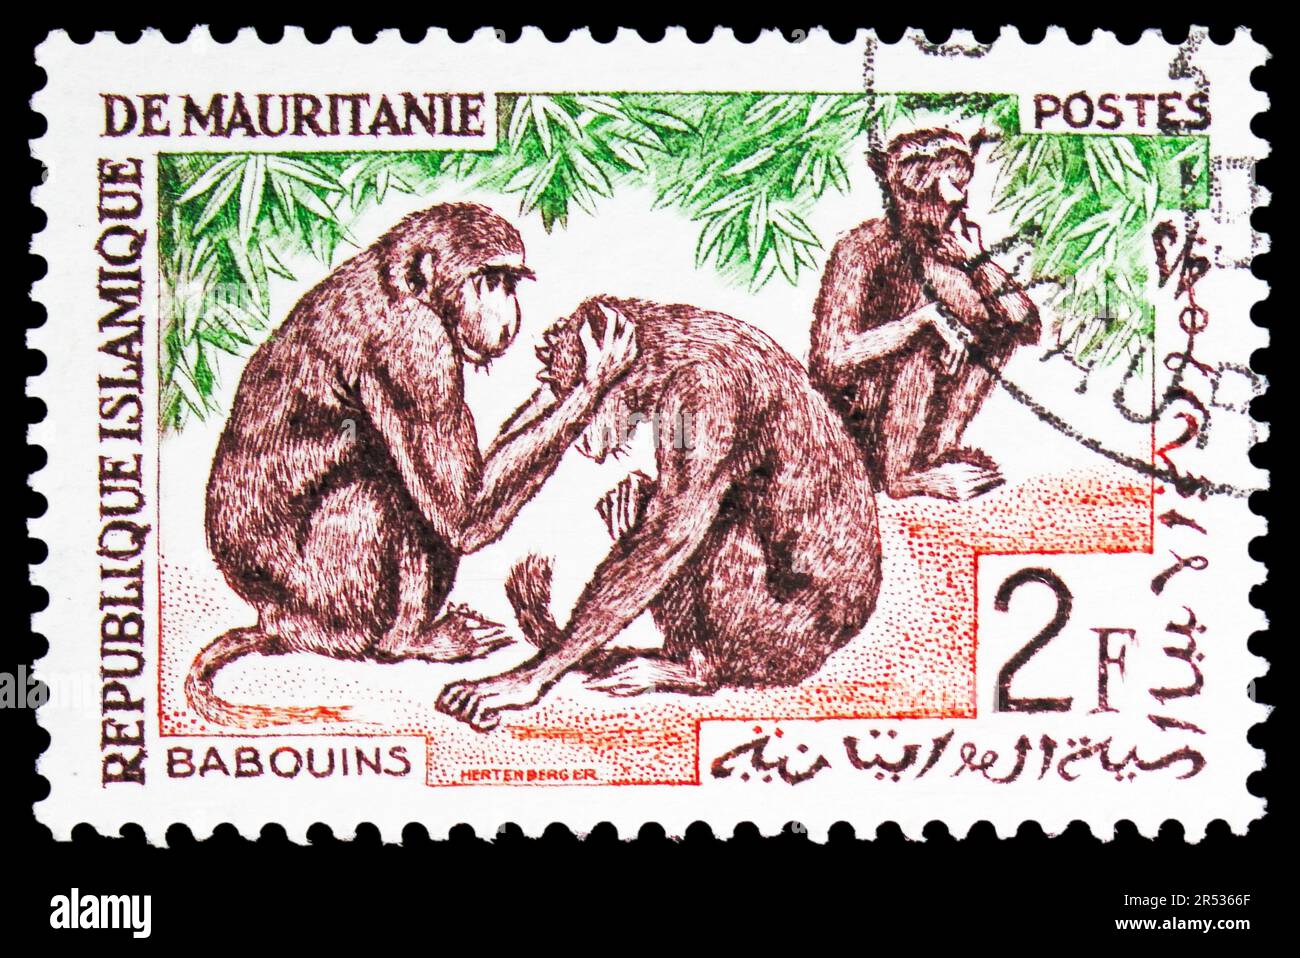 MOSCOU, RUSSIE - 18 MAI 2023 : le timbre-poste imprimé en Mauritanie montre le babouin de Guinée (Papio papio), série de faune indigène, vers 1963 Banque D'Images